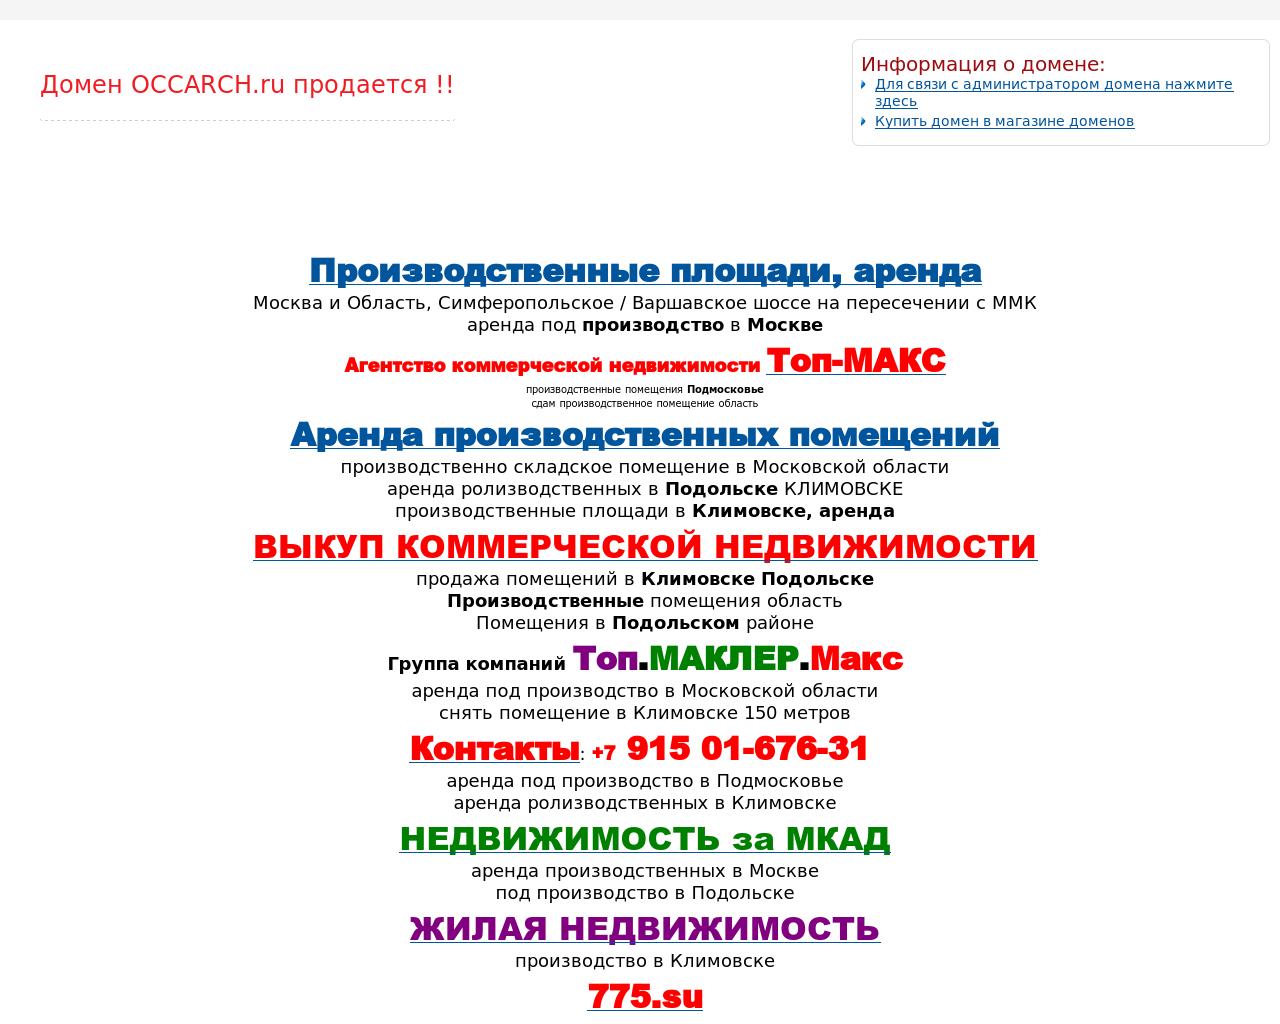 Изображение сайта occarch.ru в разрешении 1280x1024